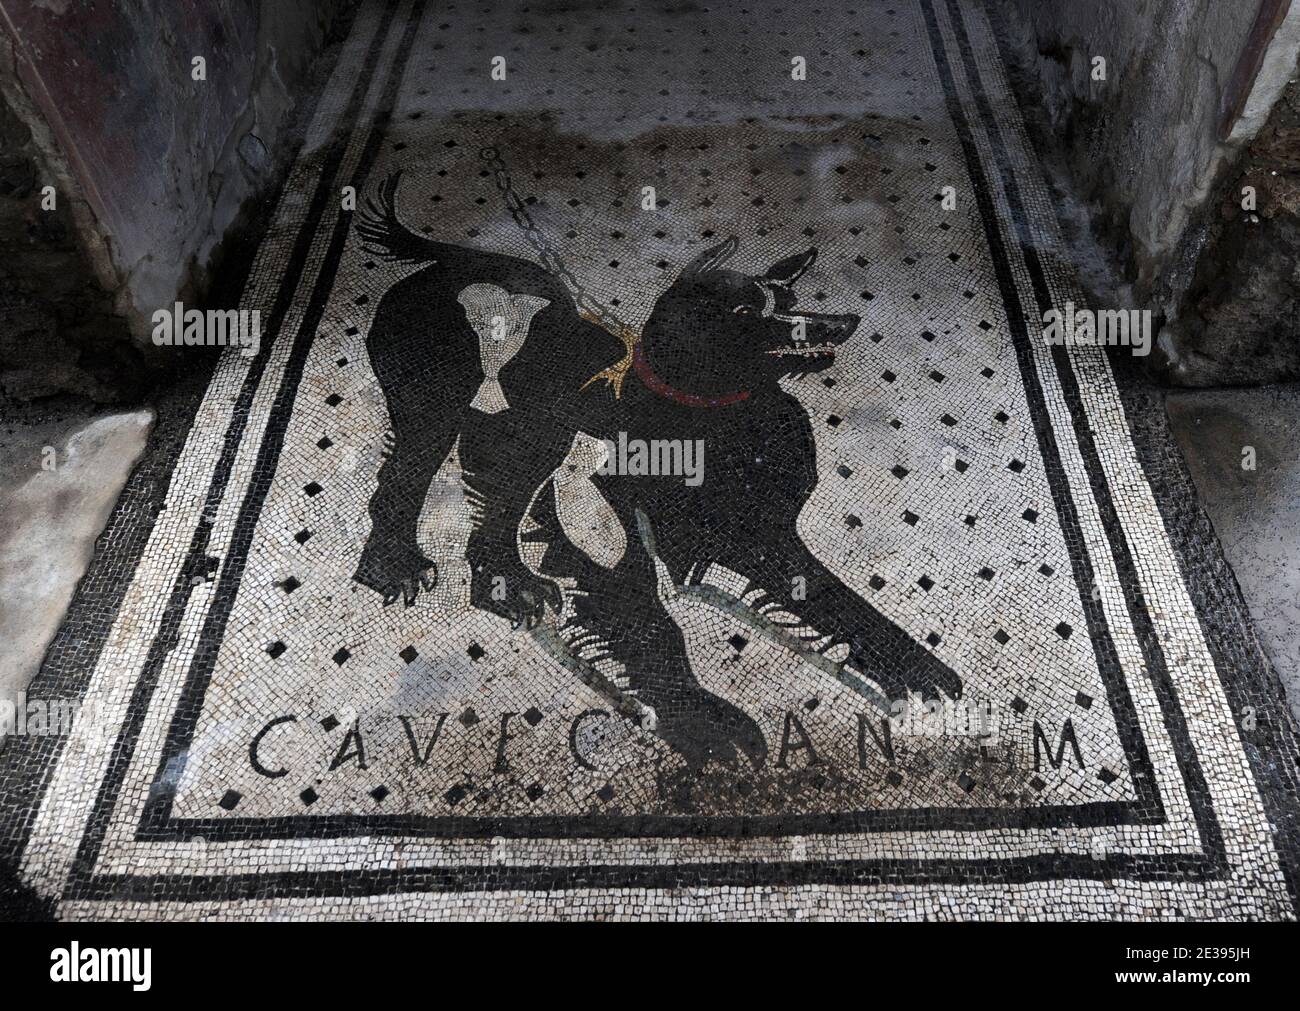 Una vista de la Casa del poeta trágico en Pompeya, al sur de Italia el 25 de noviembre de 2010. En la entrada está el famoso mosaico con un perro encadenado y el mensaje CAVERNA CANEM ('Cuidado del perro'). La antigua ciudad romana de Pompeya, conservada en cenizas volcánicas hace 2,000 años, está sufriendo de decadencia. Los arqueólogos dicen que está siendo arruinado por el vandalismo, la contaminación y la negligencia. Sus tesoros están ahora en gran peligro de ser perdidos para siempre. El 6 de noviembre, la Casa de Gladiadores de Pompeya se derrumbó y el resto de la extraordinaria ciudad antigua está en un estado peligroso. Pompeya fue destruida en 79 DC por una erupción Foto de stock